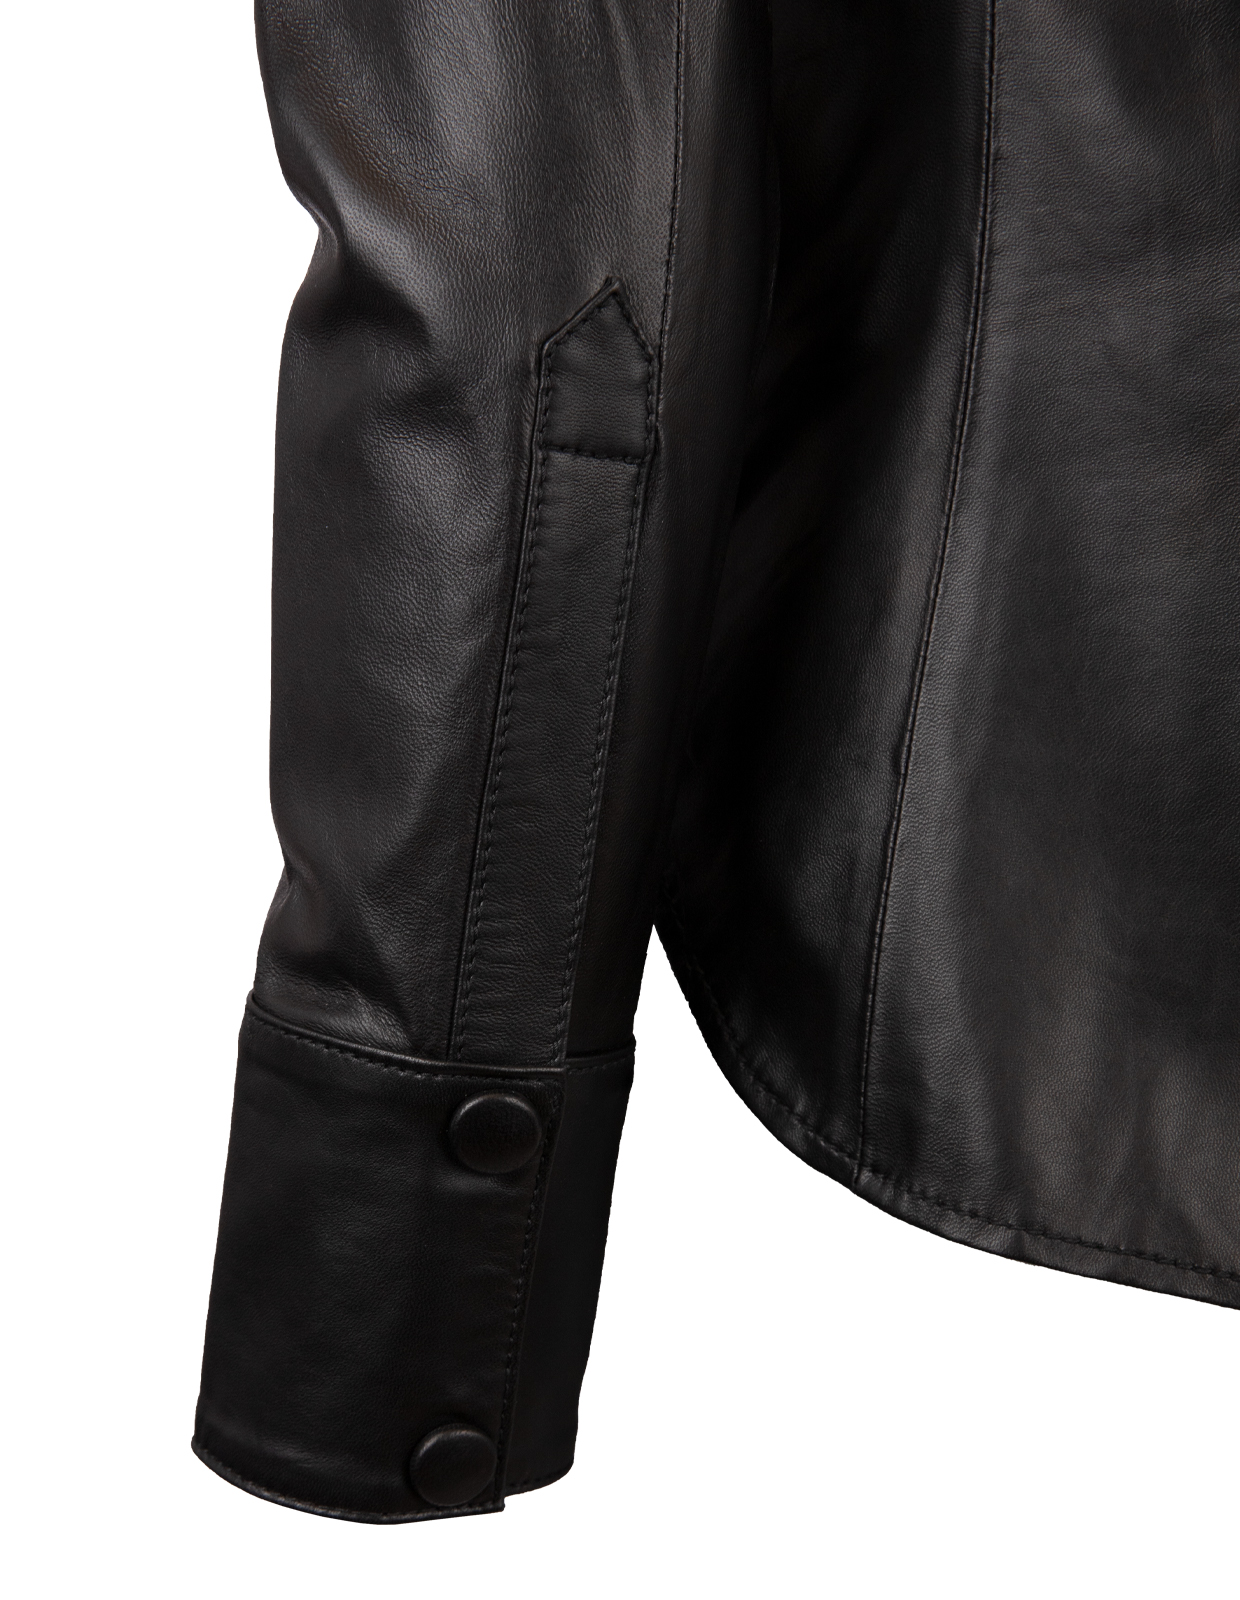 Elle Leather Shirt Black Stl 44